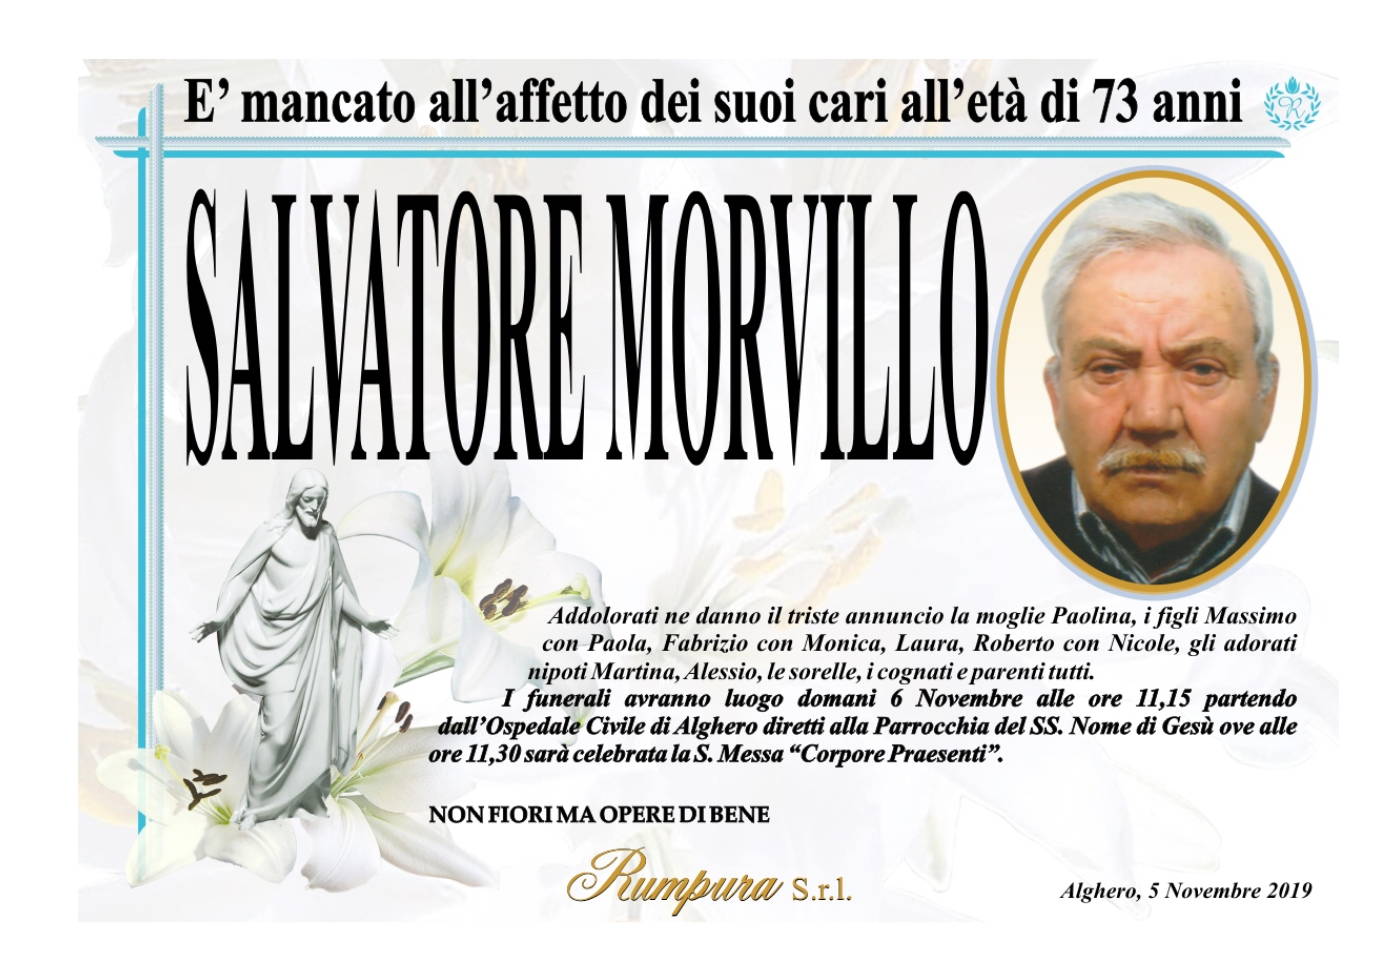 Salvatore Morvillo